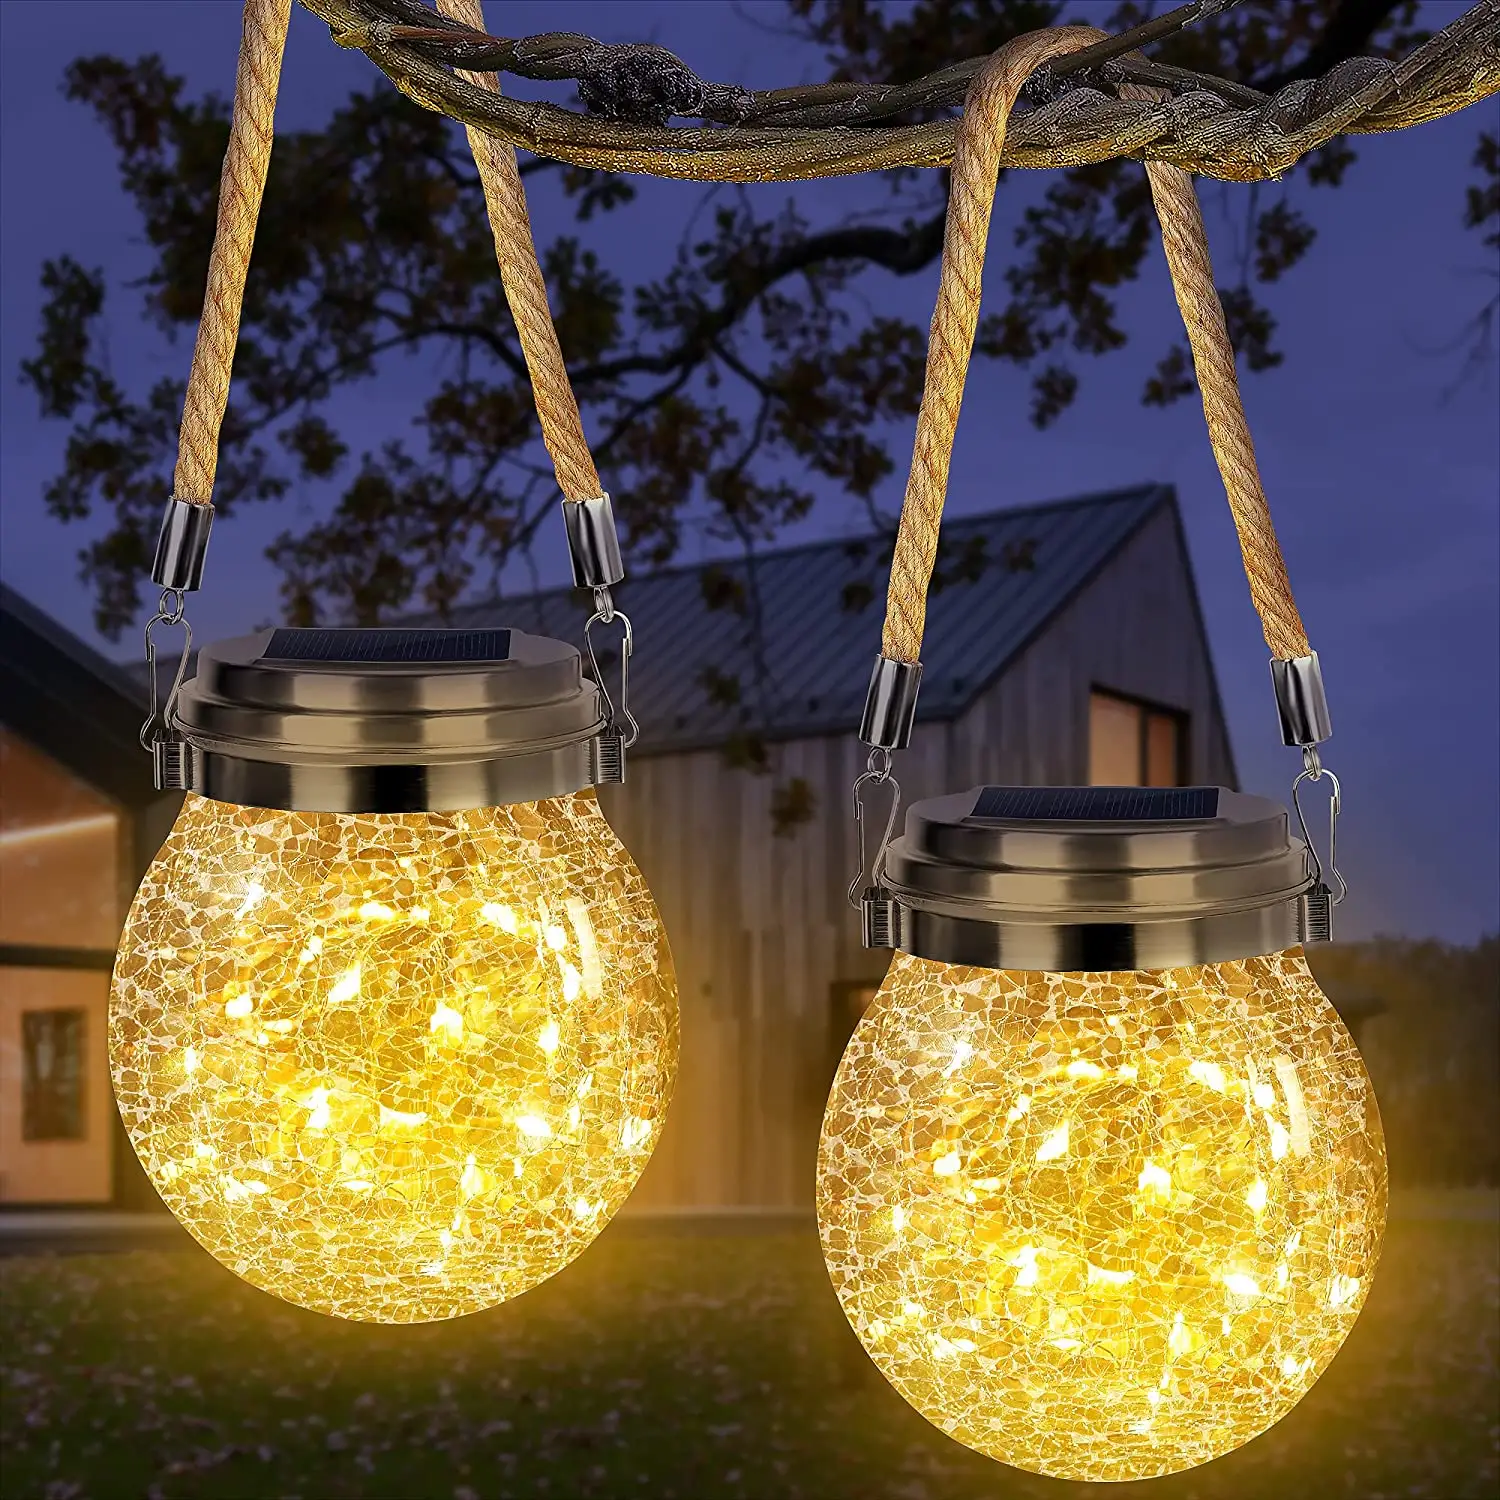 Lanterne solaire à 30 LED avec imperméable conforme à la norme IP65, luminaire décoratif d'extérieur, idéal pour un jardin ou une fête, pack de 12 unités